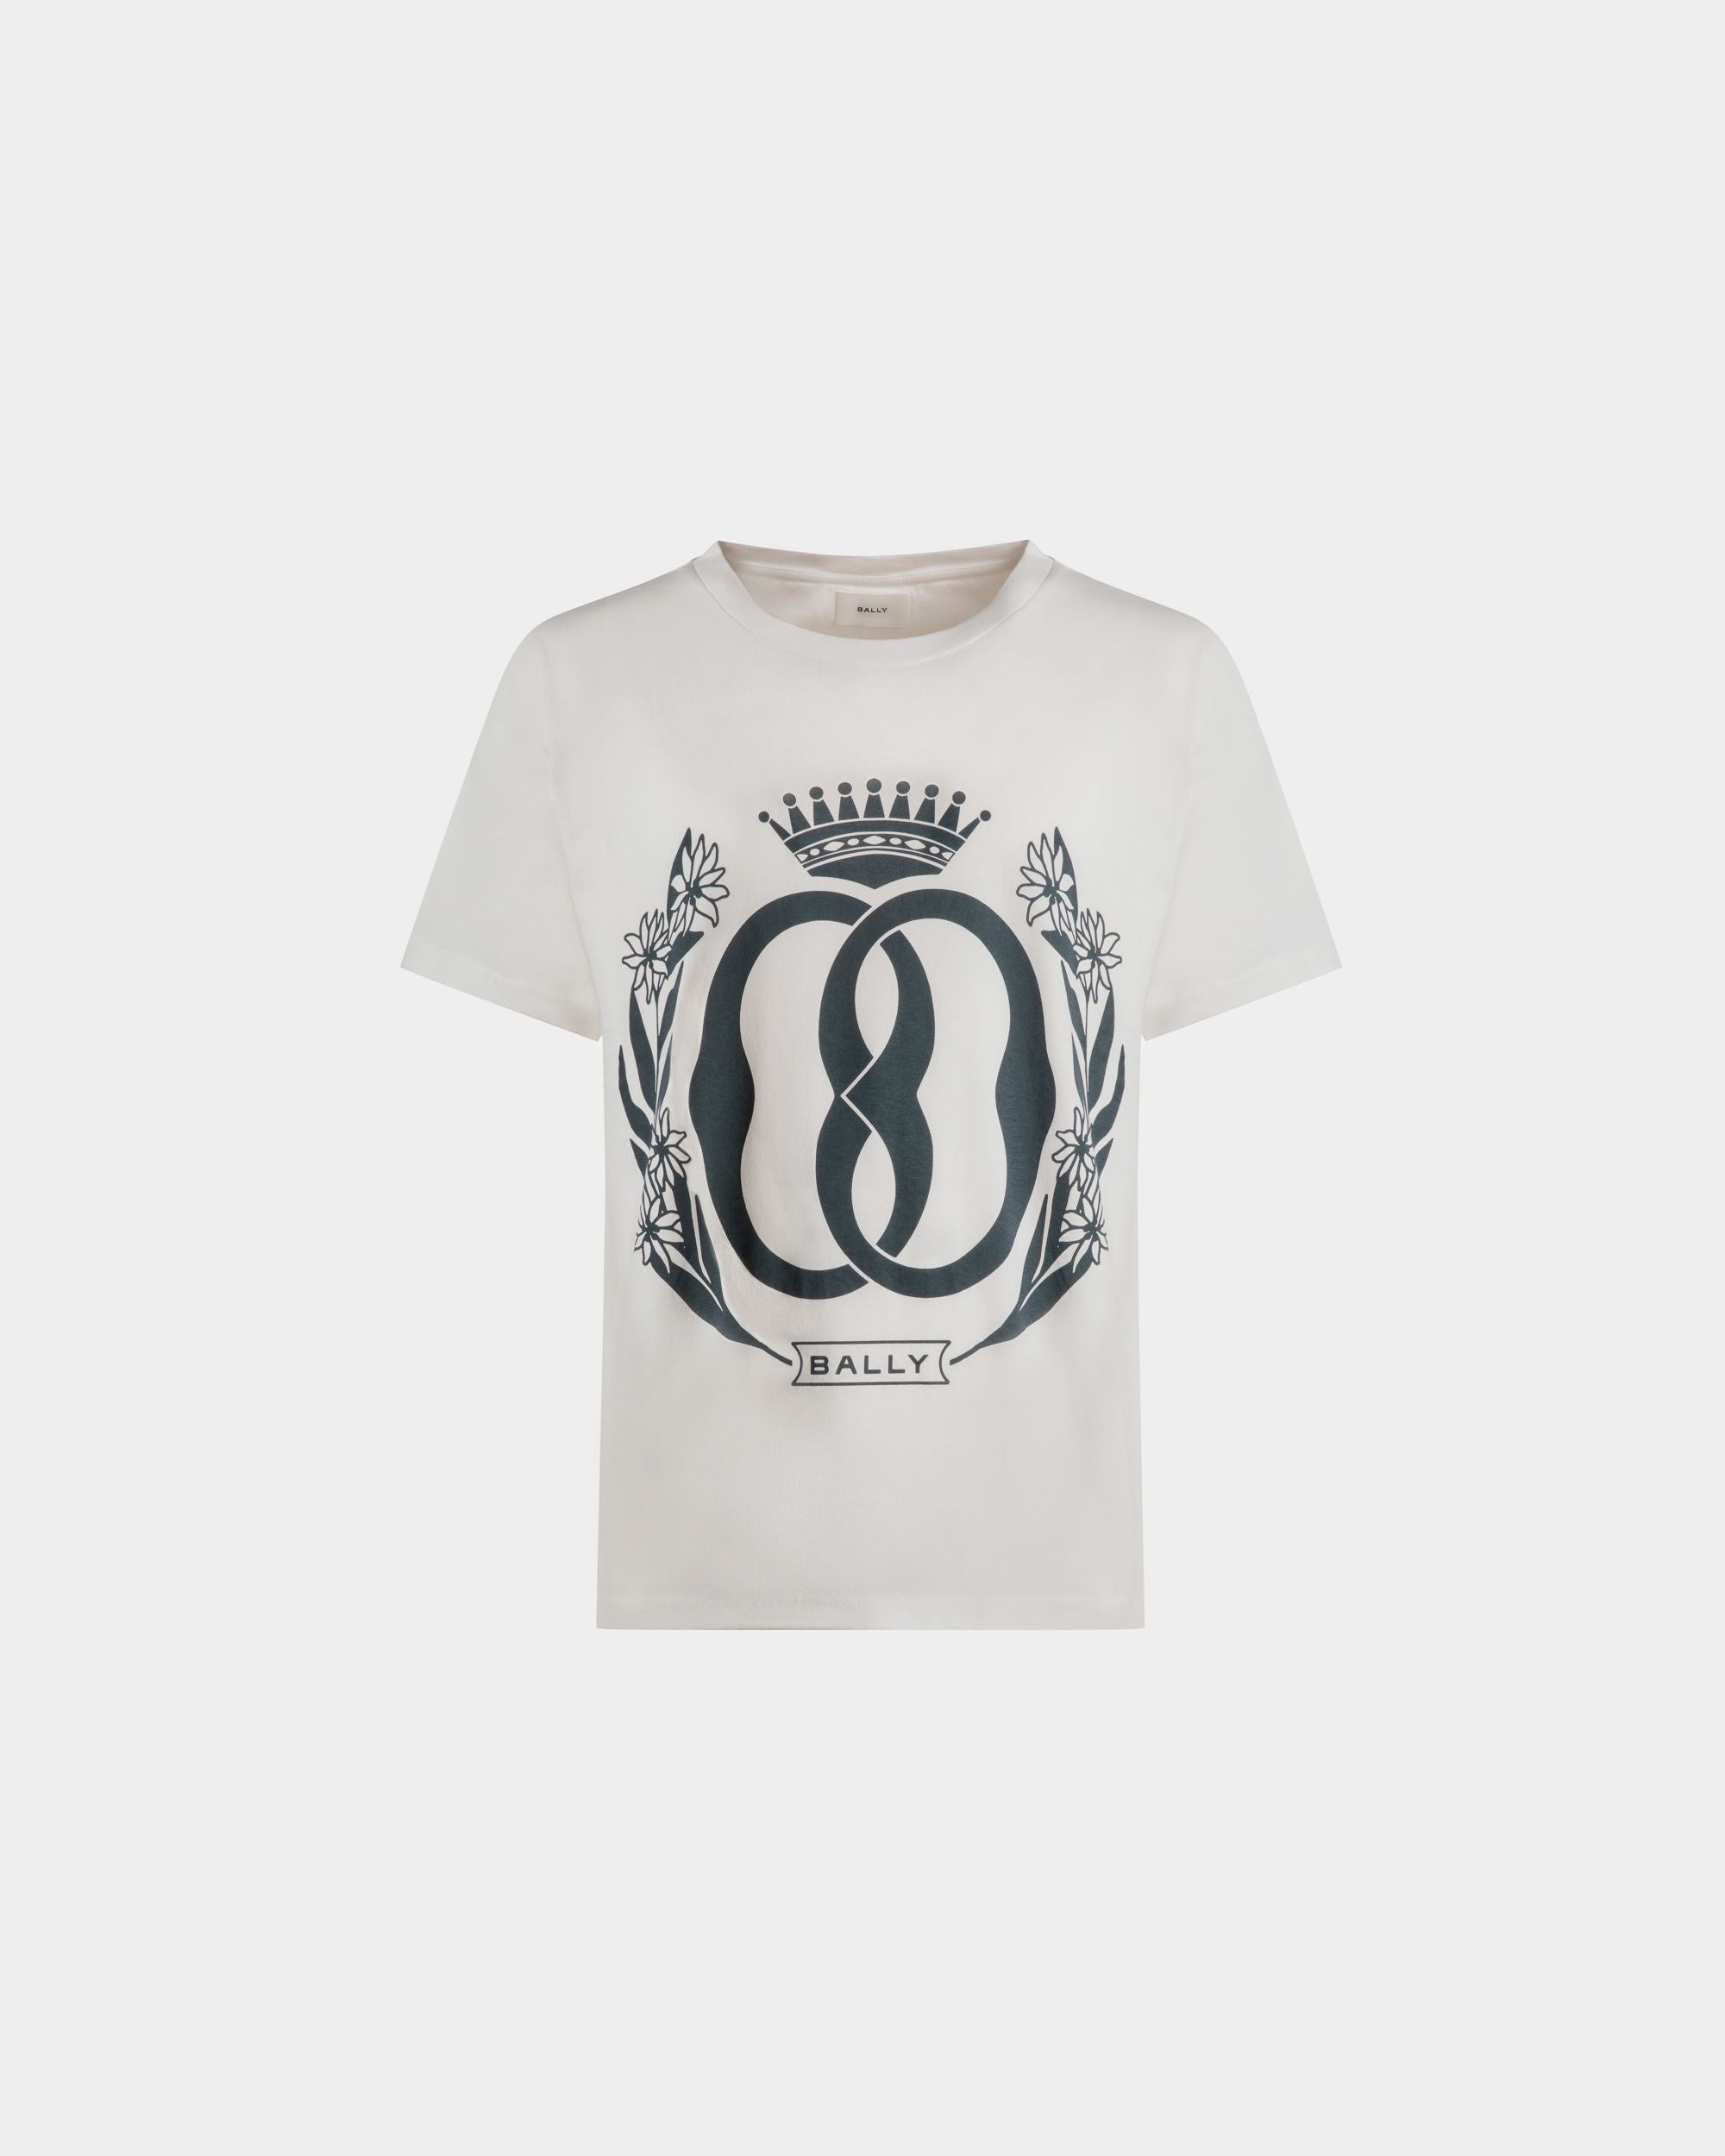 T-Shirt mit Foliendruck | T-Shirt für Herren | Weiße Baumwolle | Bally | Still Life Vorderseite